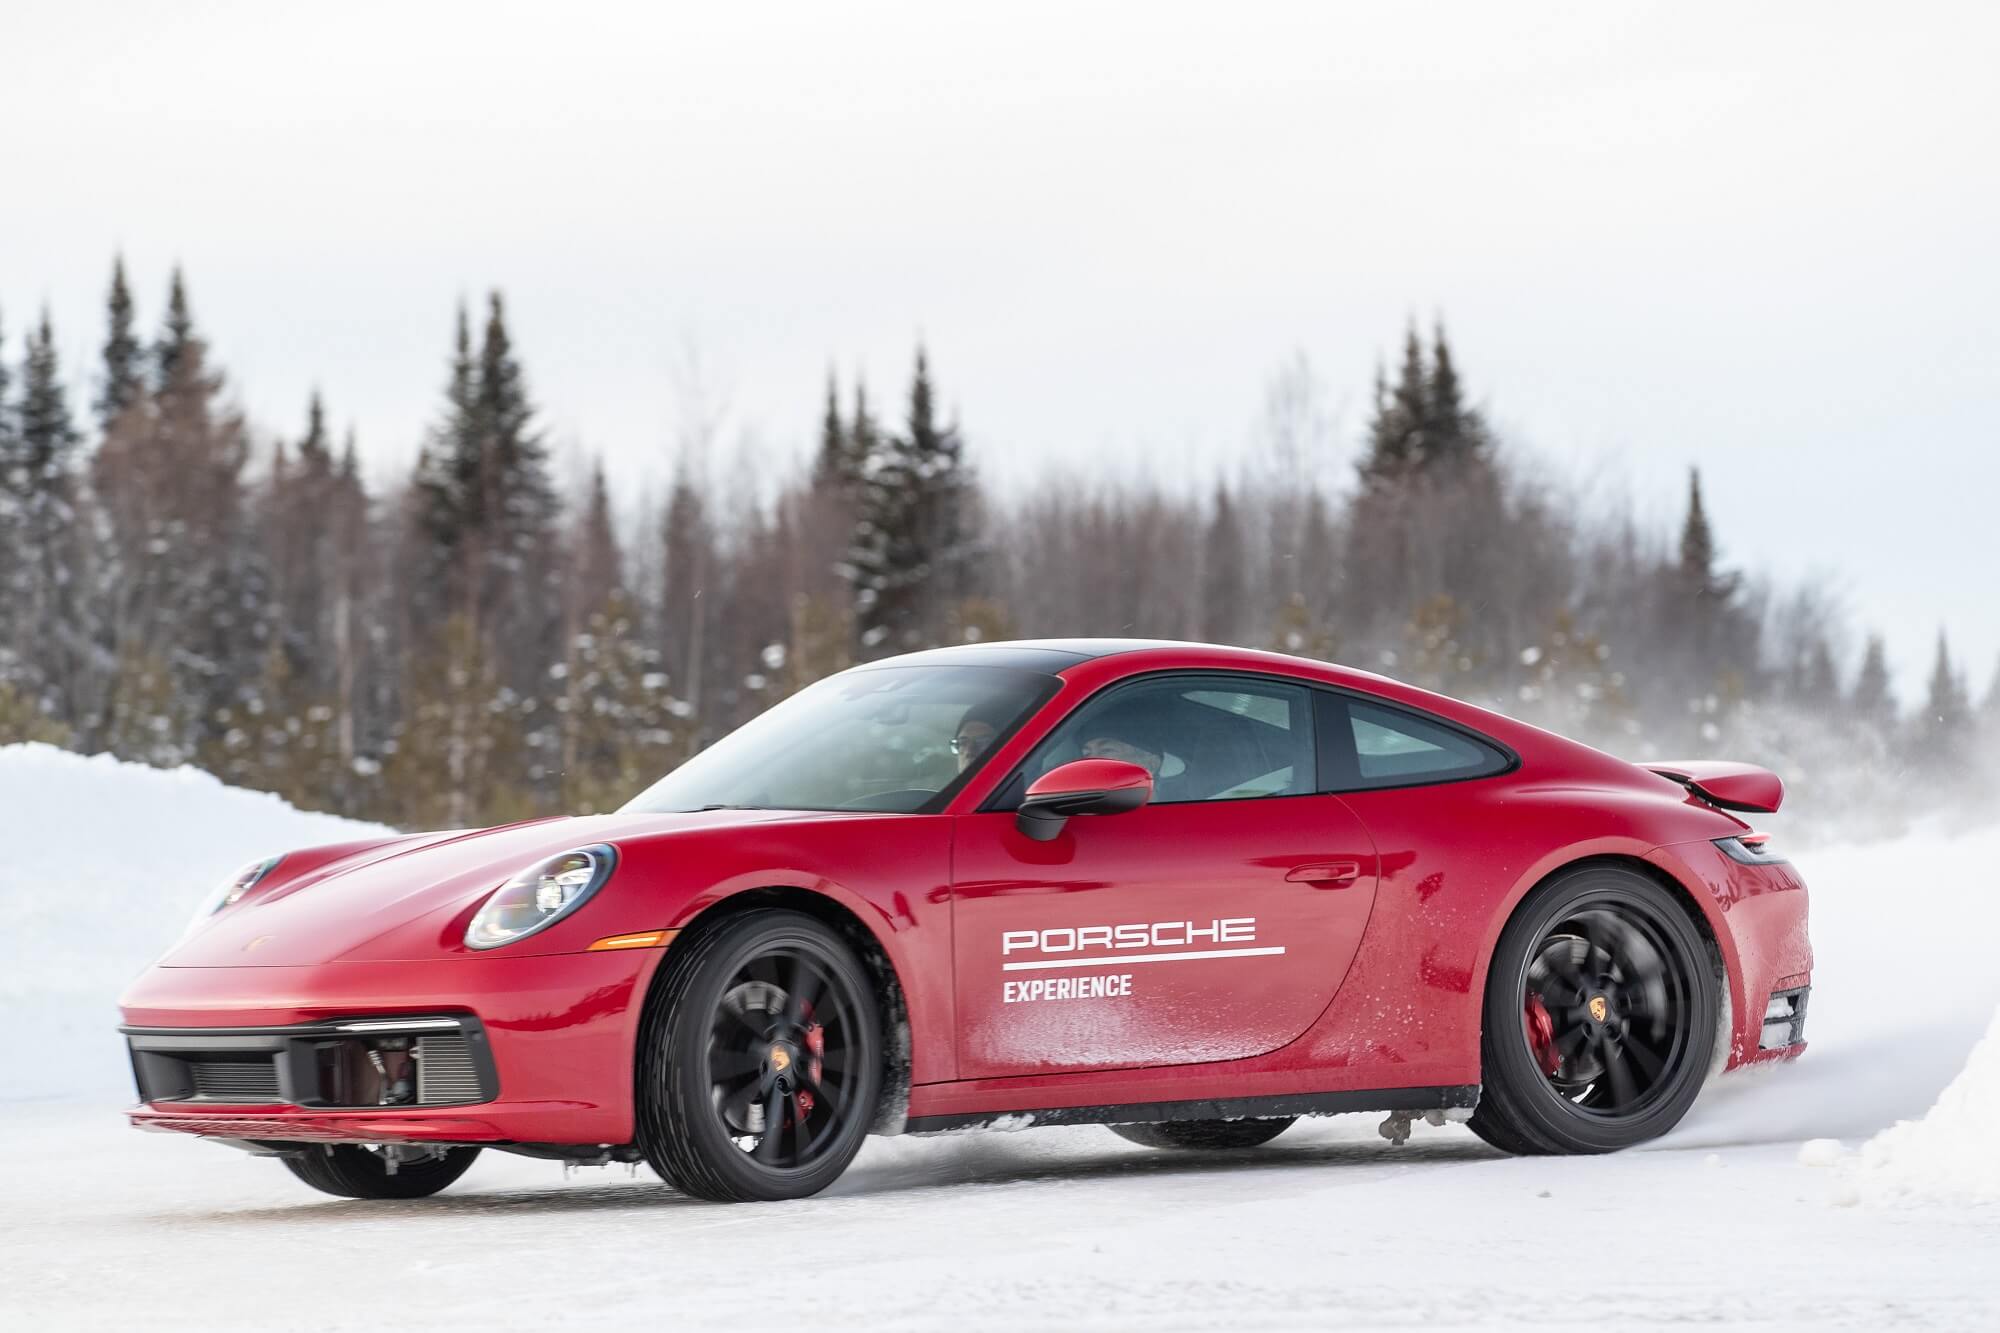 Porsche 911 vermelho levantando neve e gelo na traseira ao derrapar